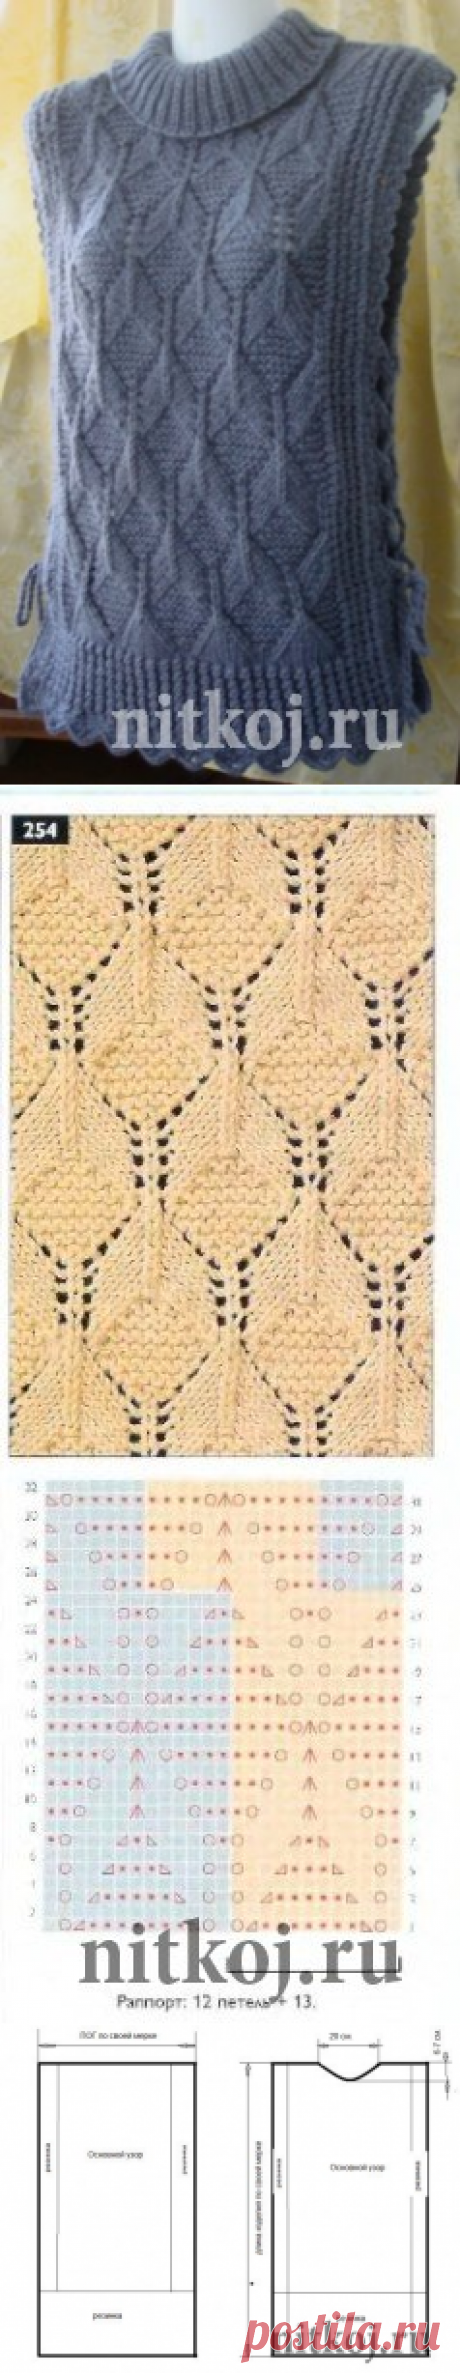 Безрукавка – пончо на завязках » Ниткой - вязаные вещи для вашего дома, вязание крючком, вязание спицами, схемы вязания